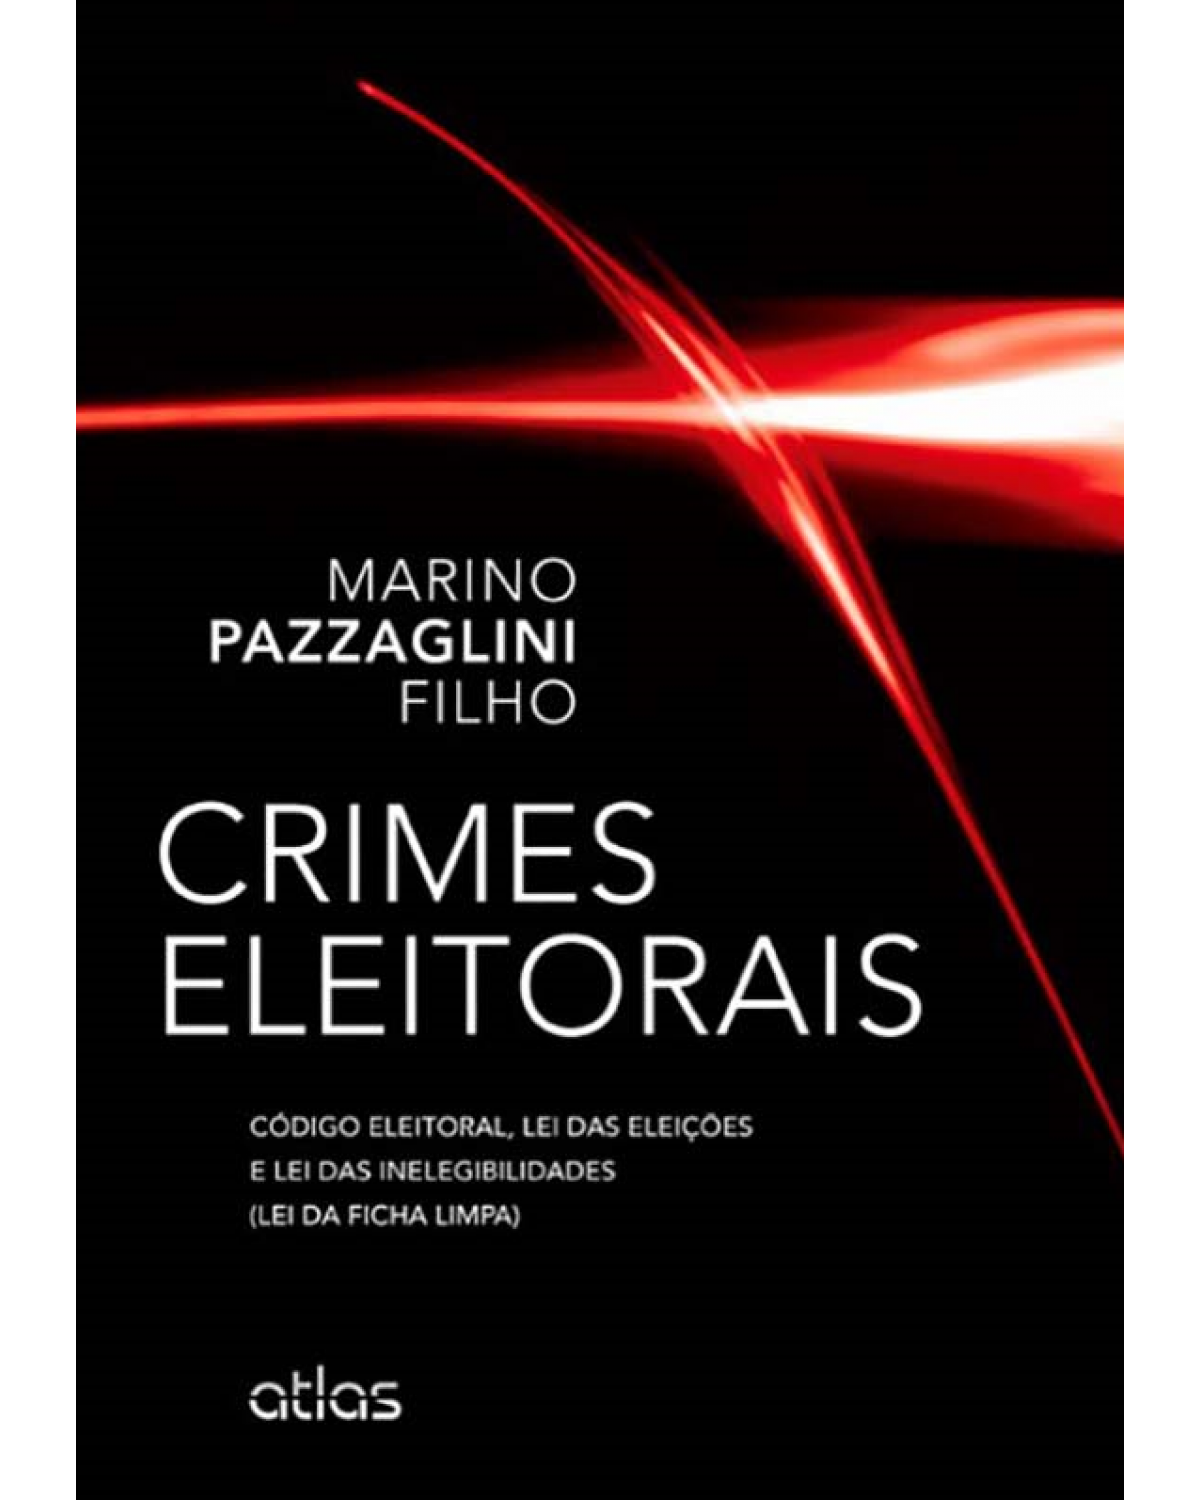 Crimes eleitorais: Código eleitoral, lei das eleições e lei das inelegibilidades (ficha limpa) - 1ª Edição | 2012